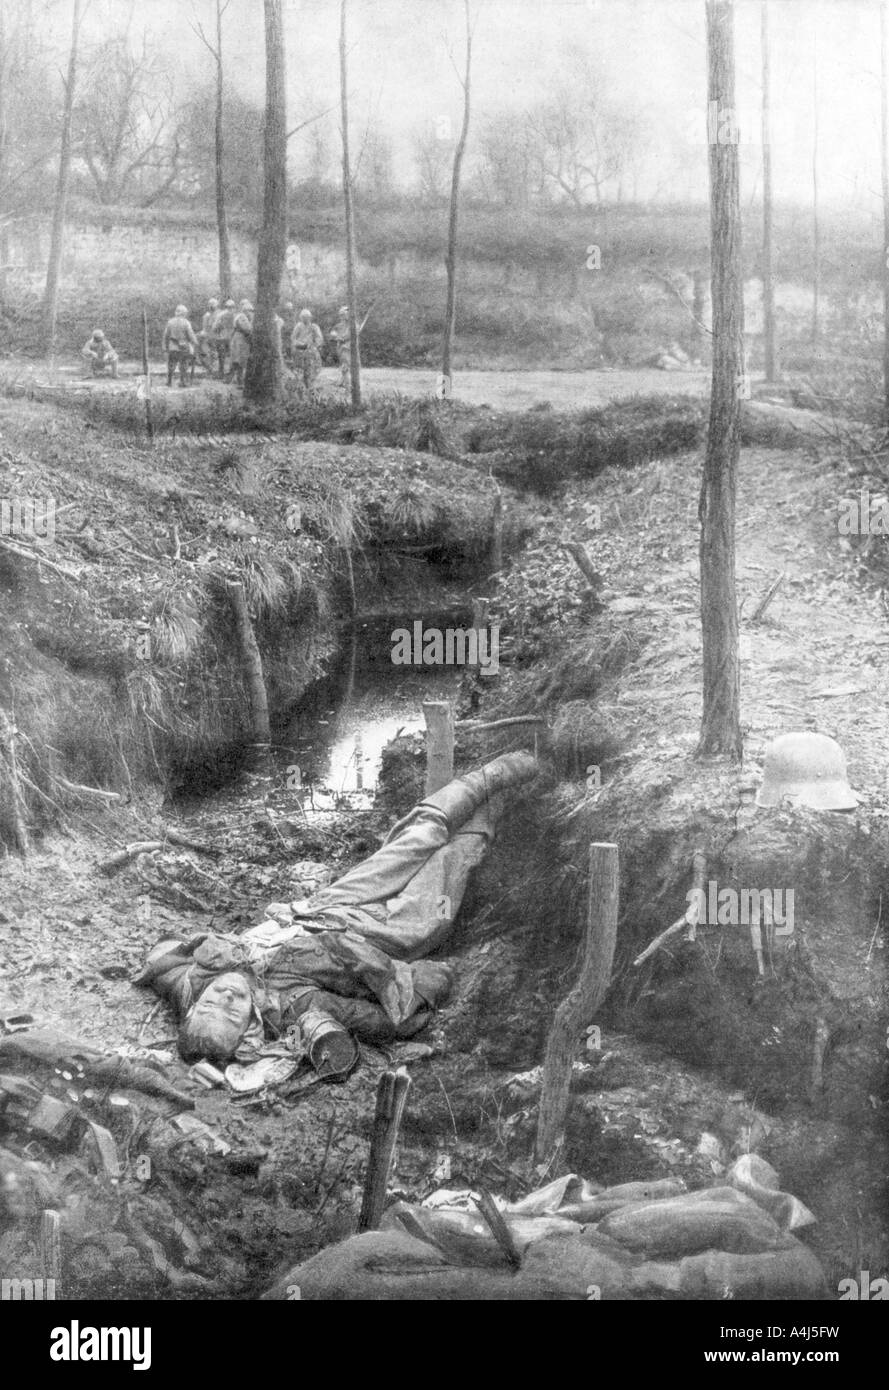 Morto il soldato tedesco, Plessis-de-Roye, Piccardia, Francia, 30 marzo 1918. Artista: sconosciuto Foto Stock